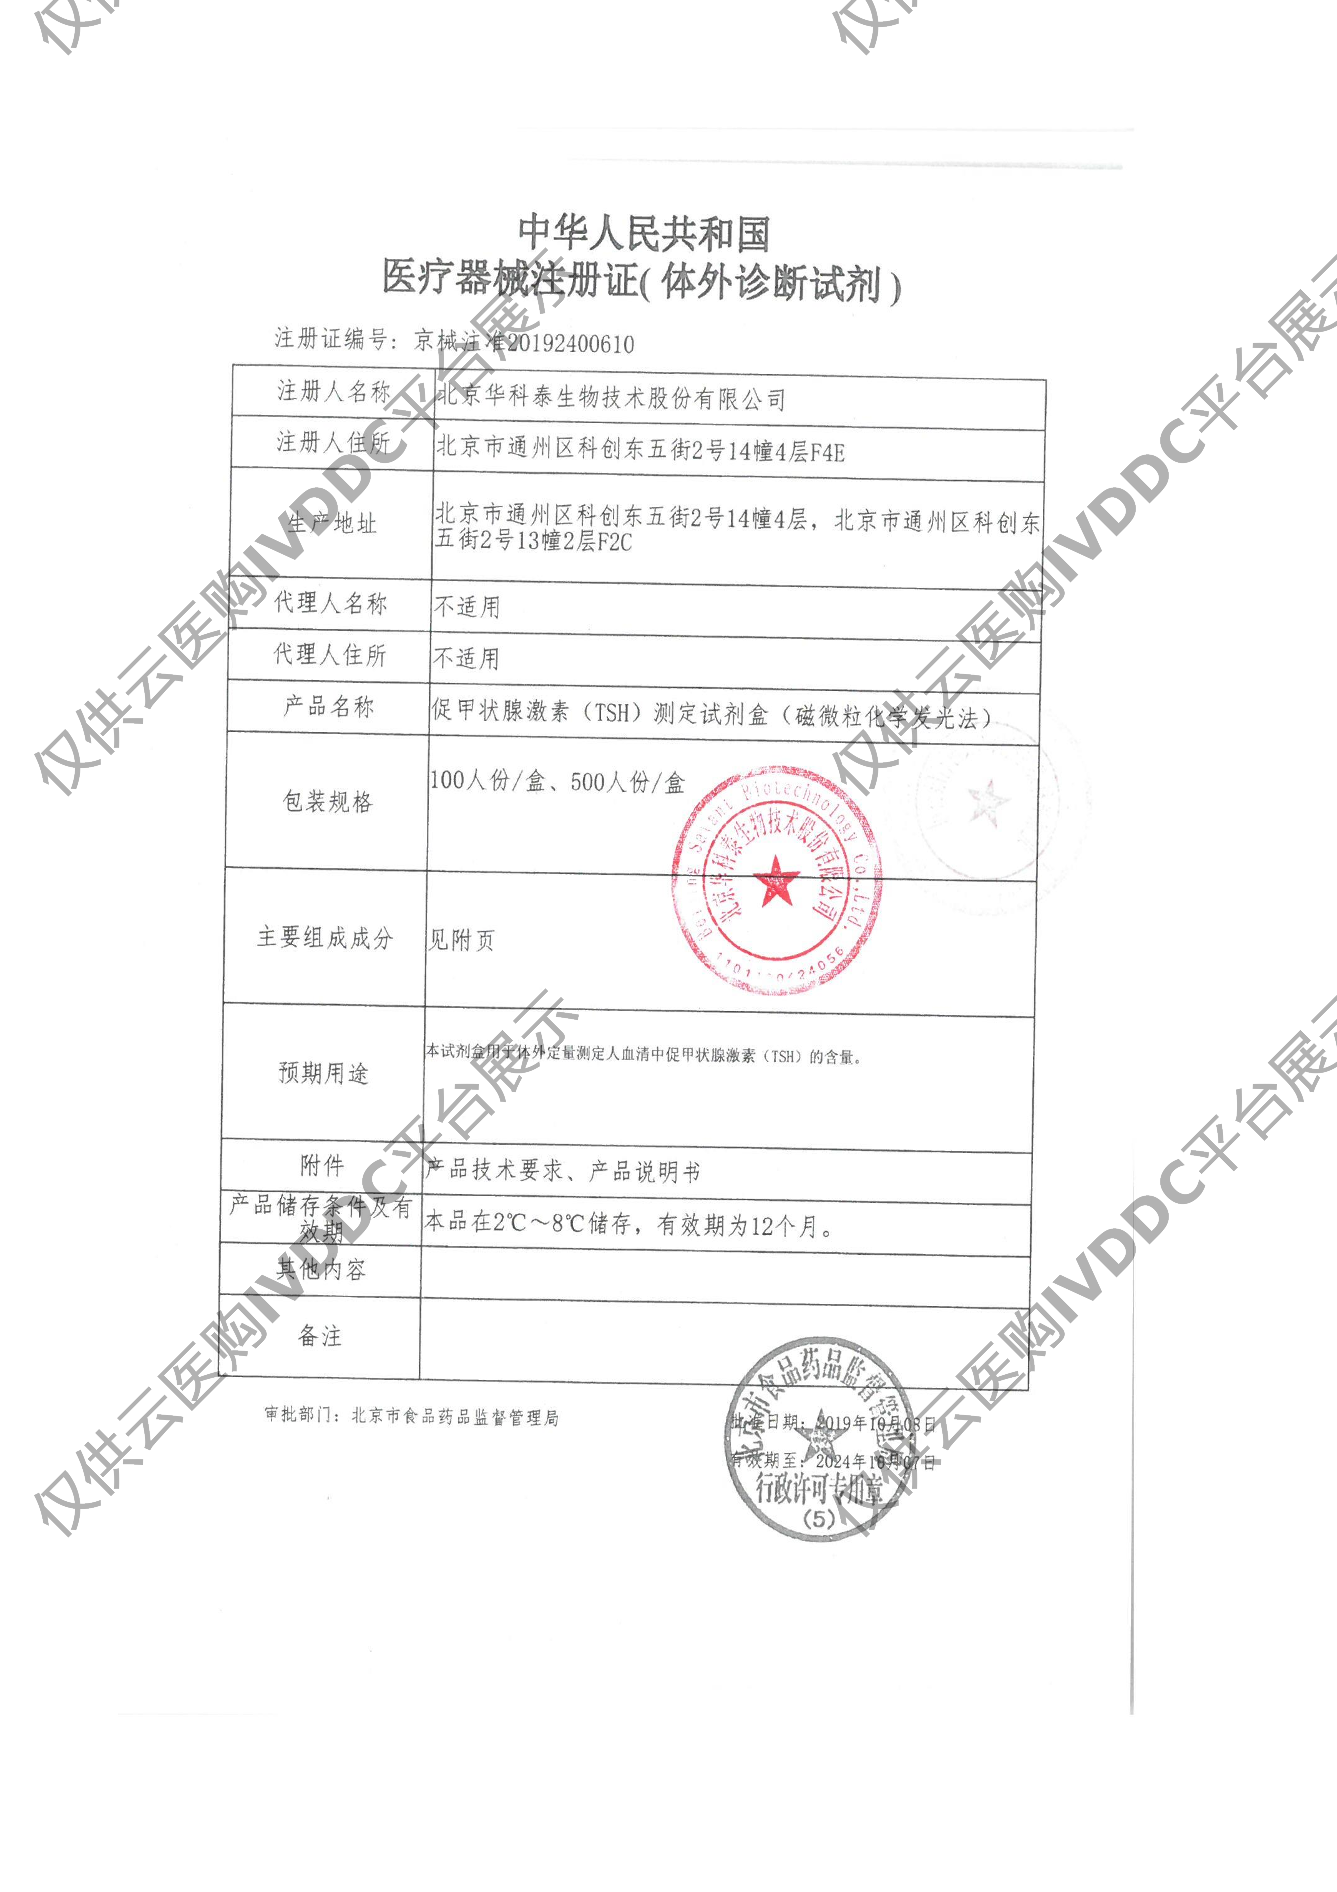 【华科泰】促甲状腺激素（TSH）测定试剂盒（磁微粒化学发光法）注册证